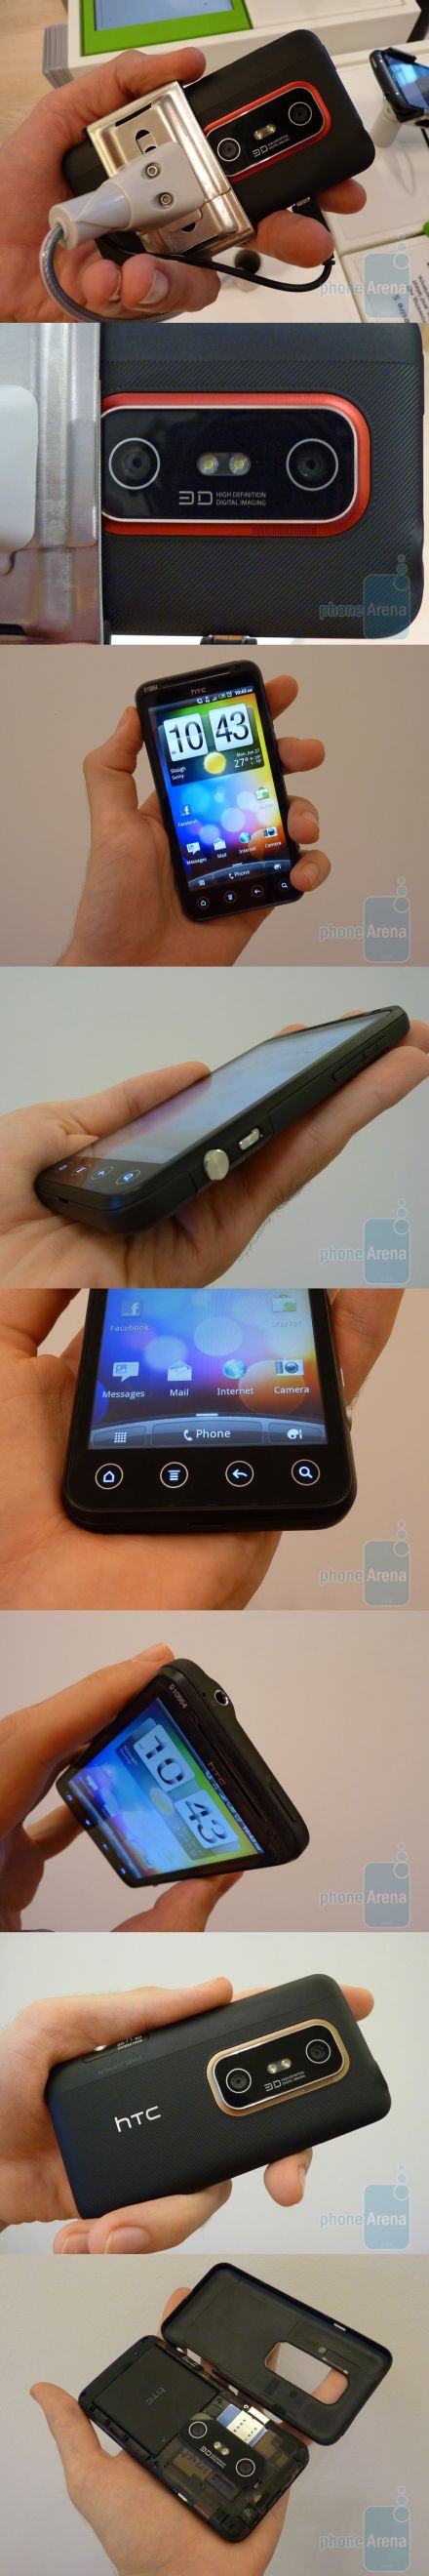 Élőben a HTC EVO 3D modellel